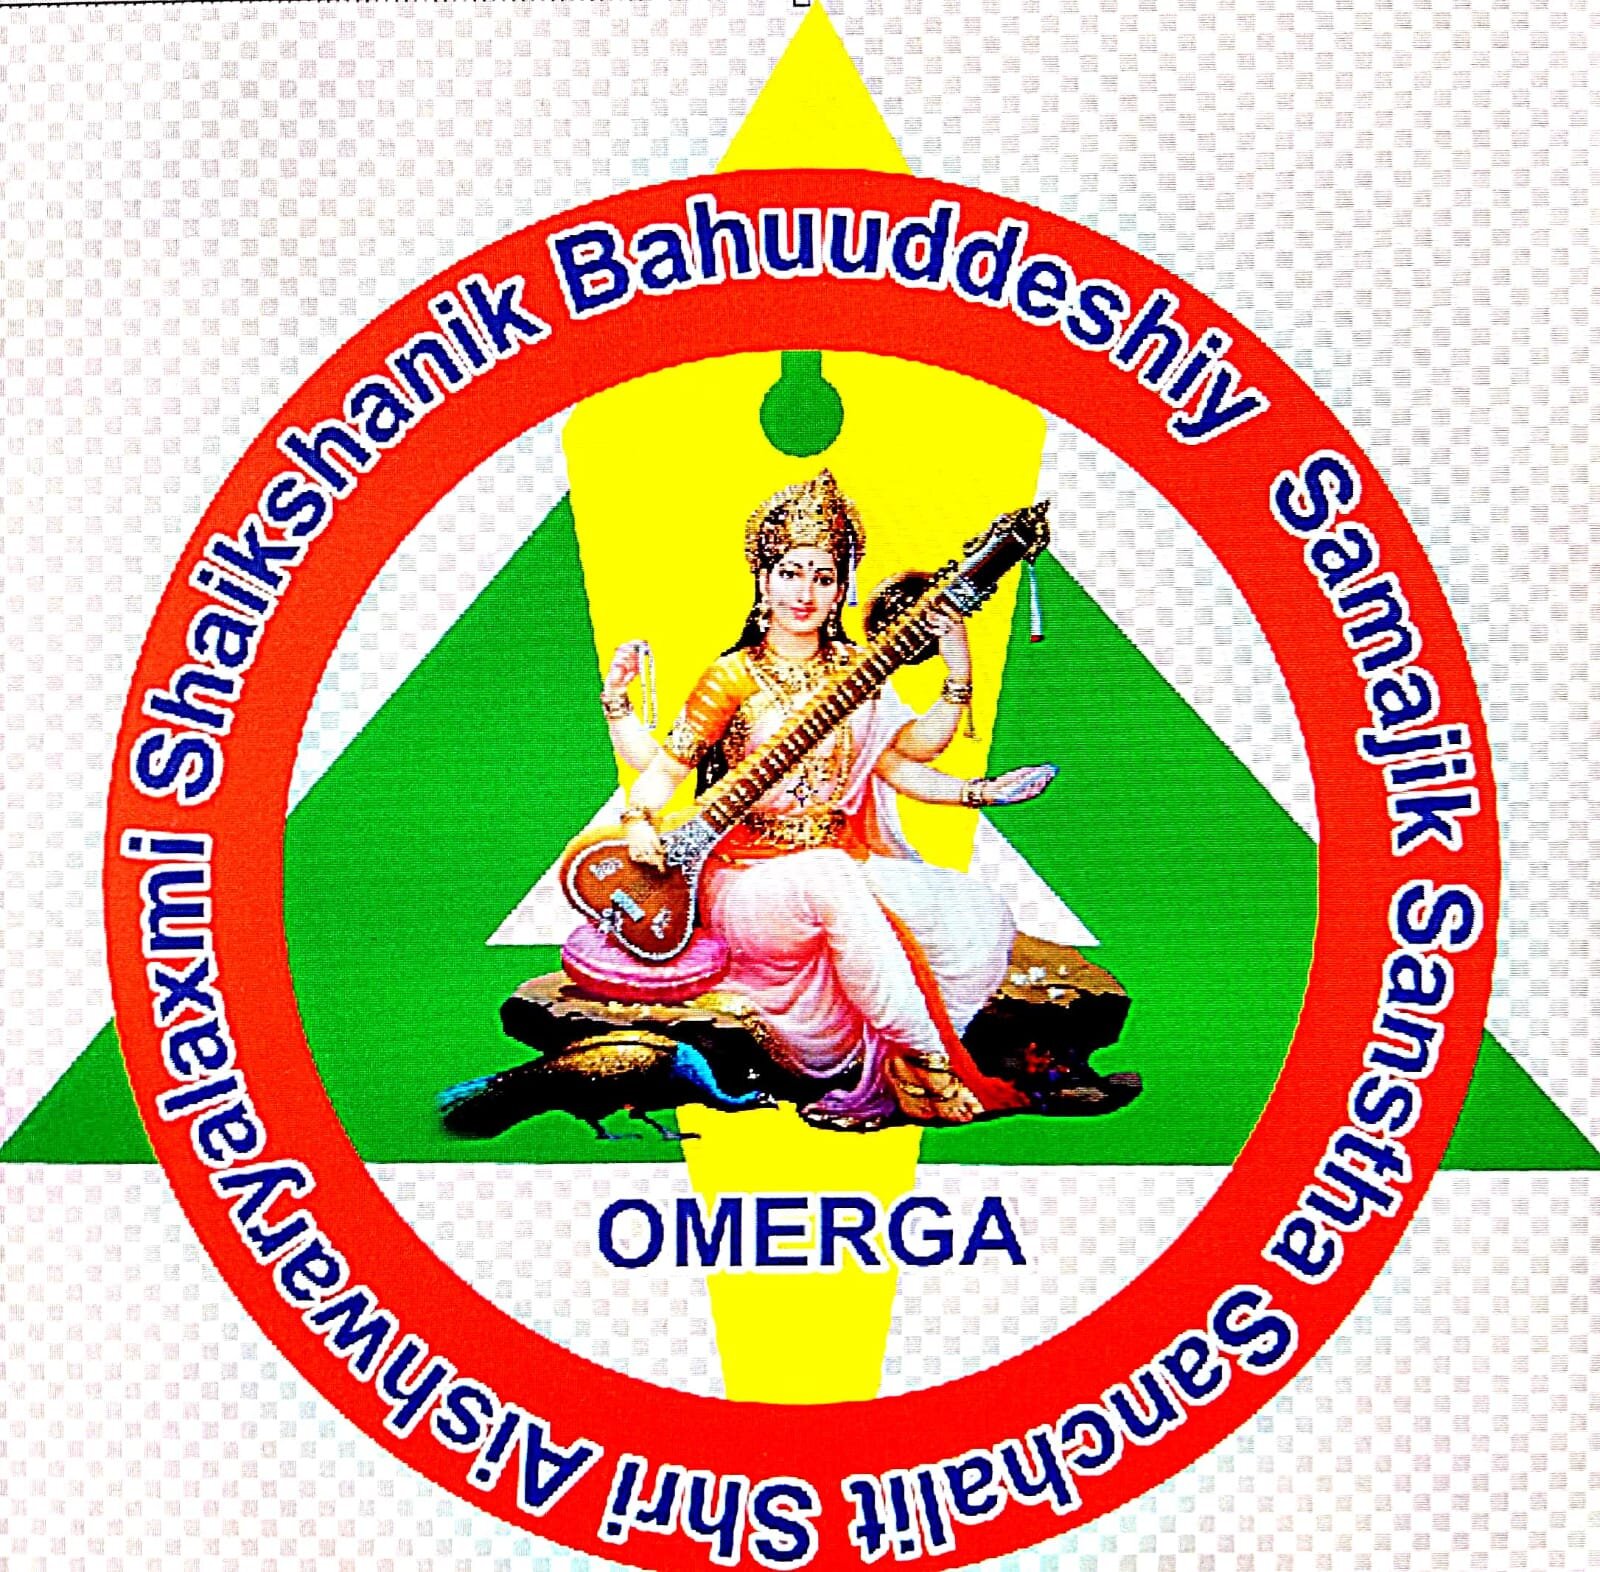 Shri Aishwarya Laxmi Shaikshanik Bahuuddeshiy Samajik Sanstha